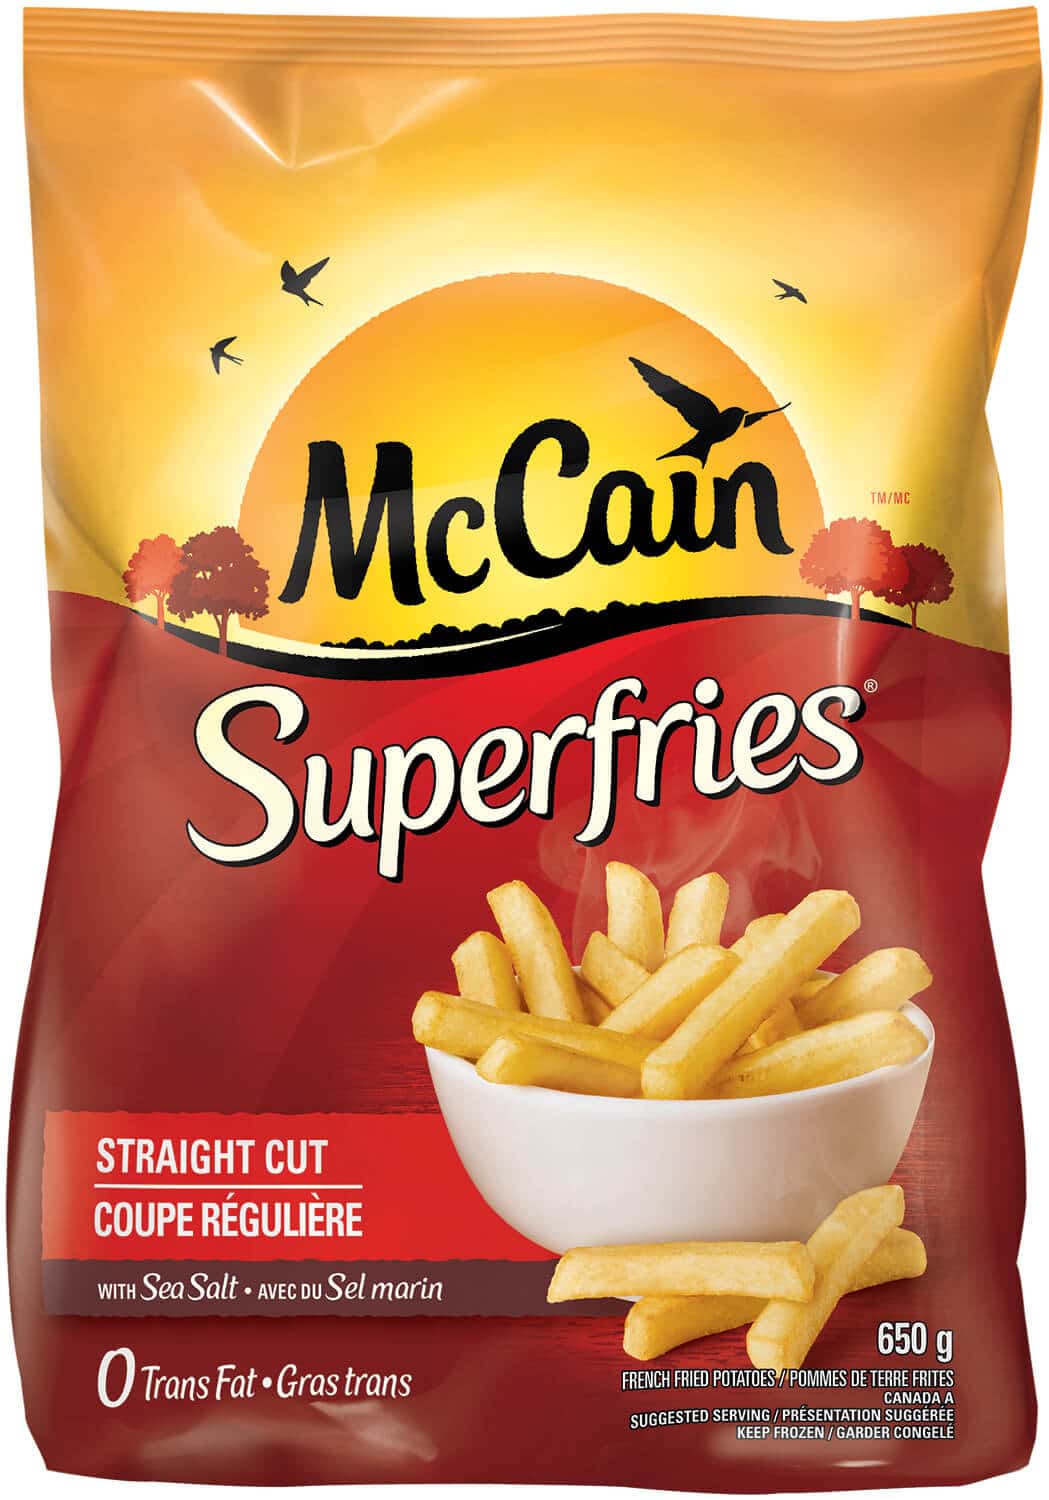 McCain Superfries package 